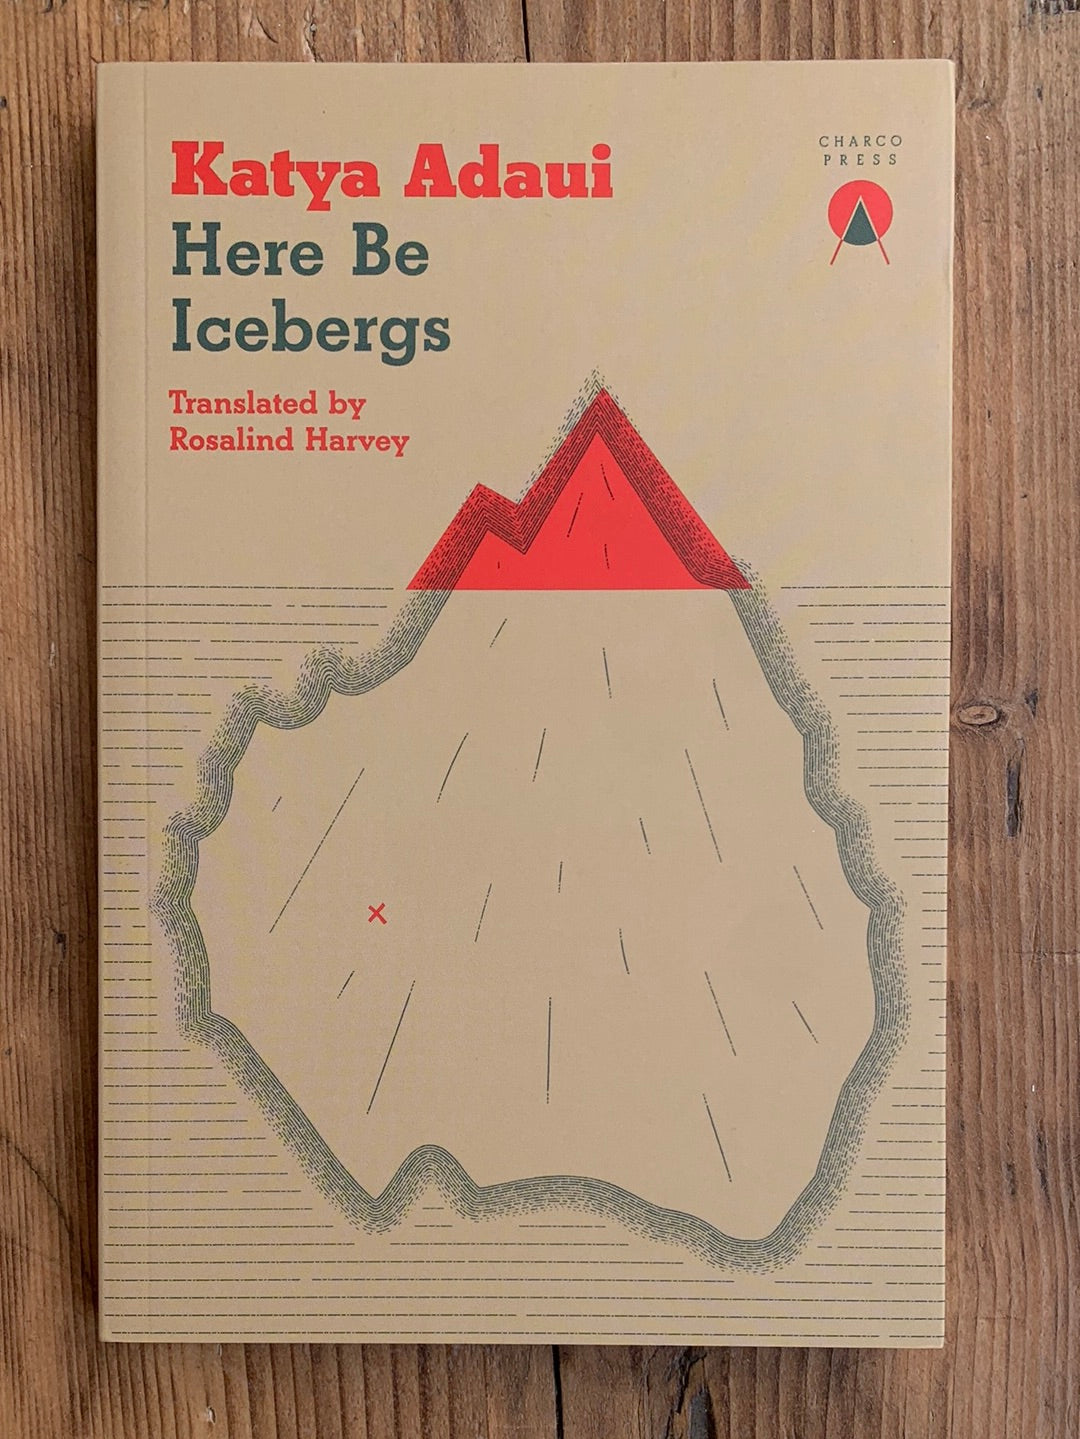 Here Be Icebergs